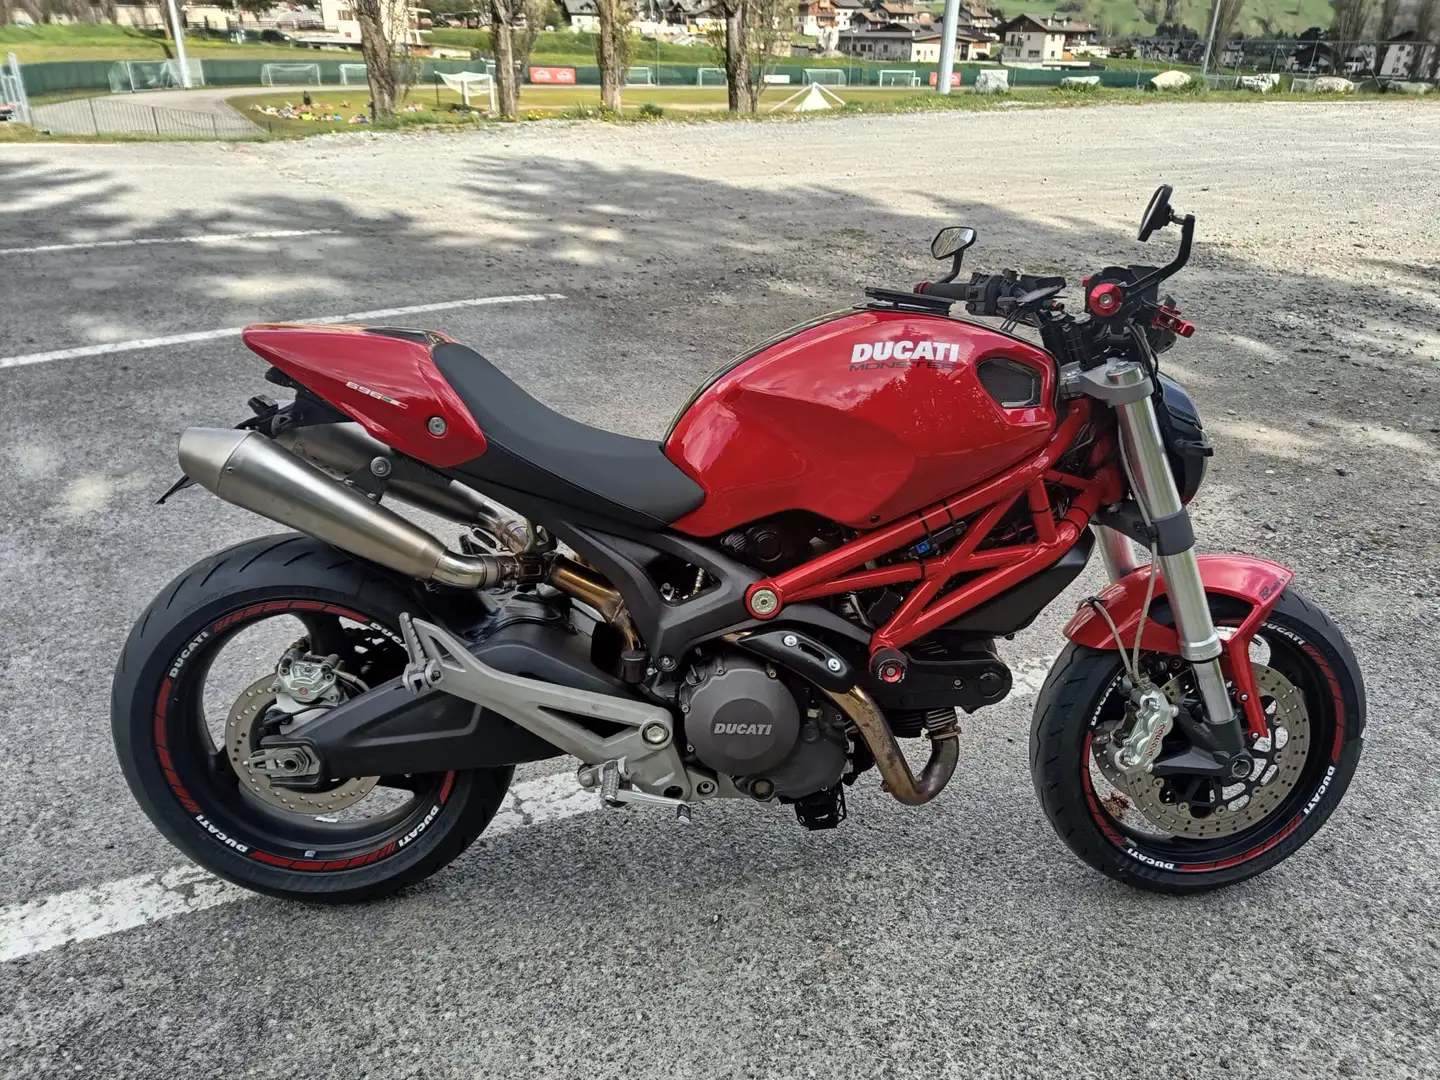 Ducati Monster 696 Depotenziata a libretto - Patente A2 Rot - 2